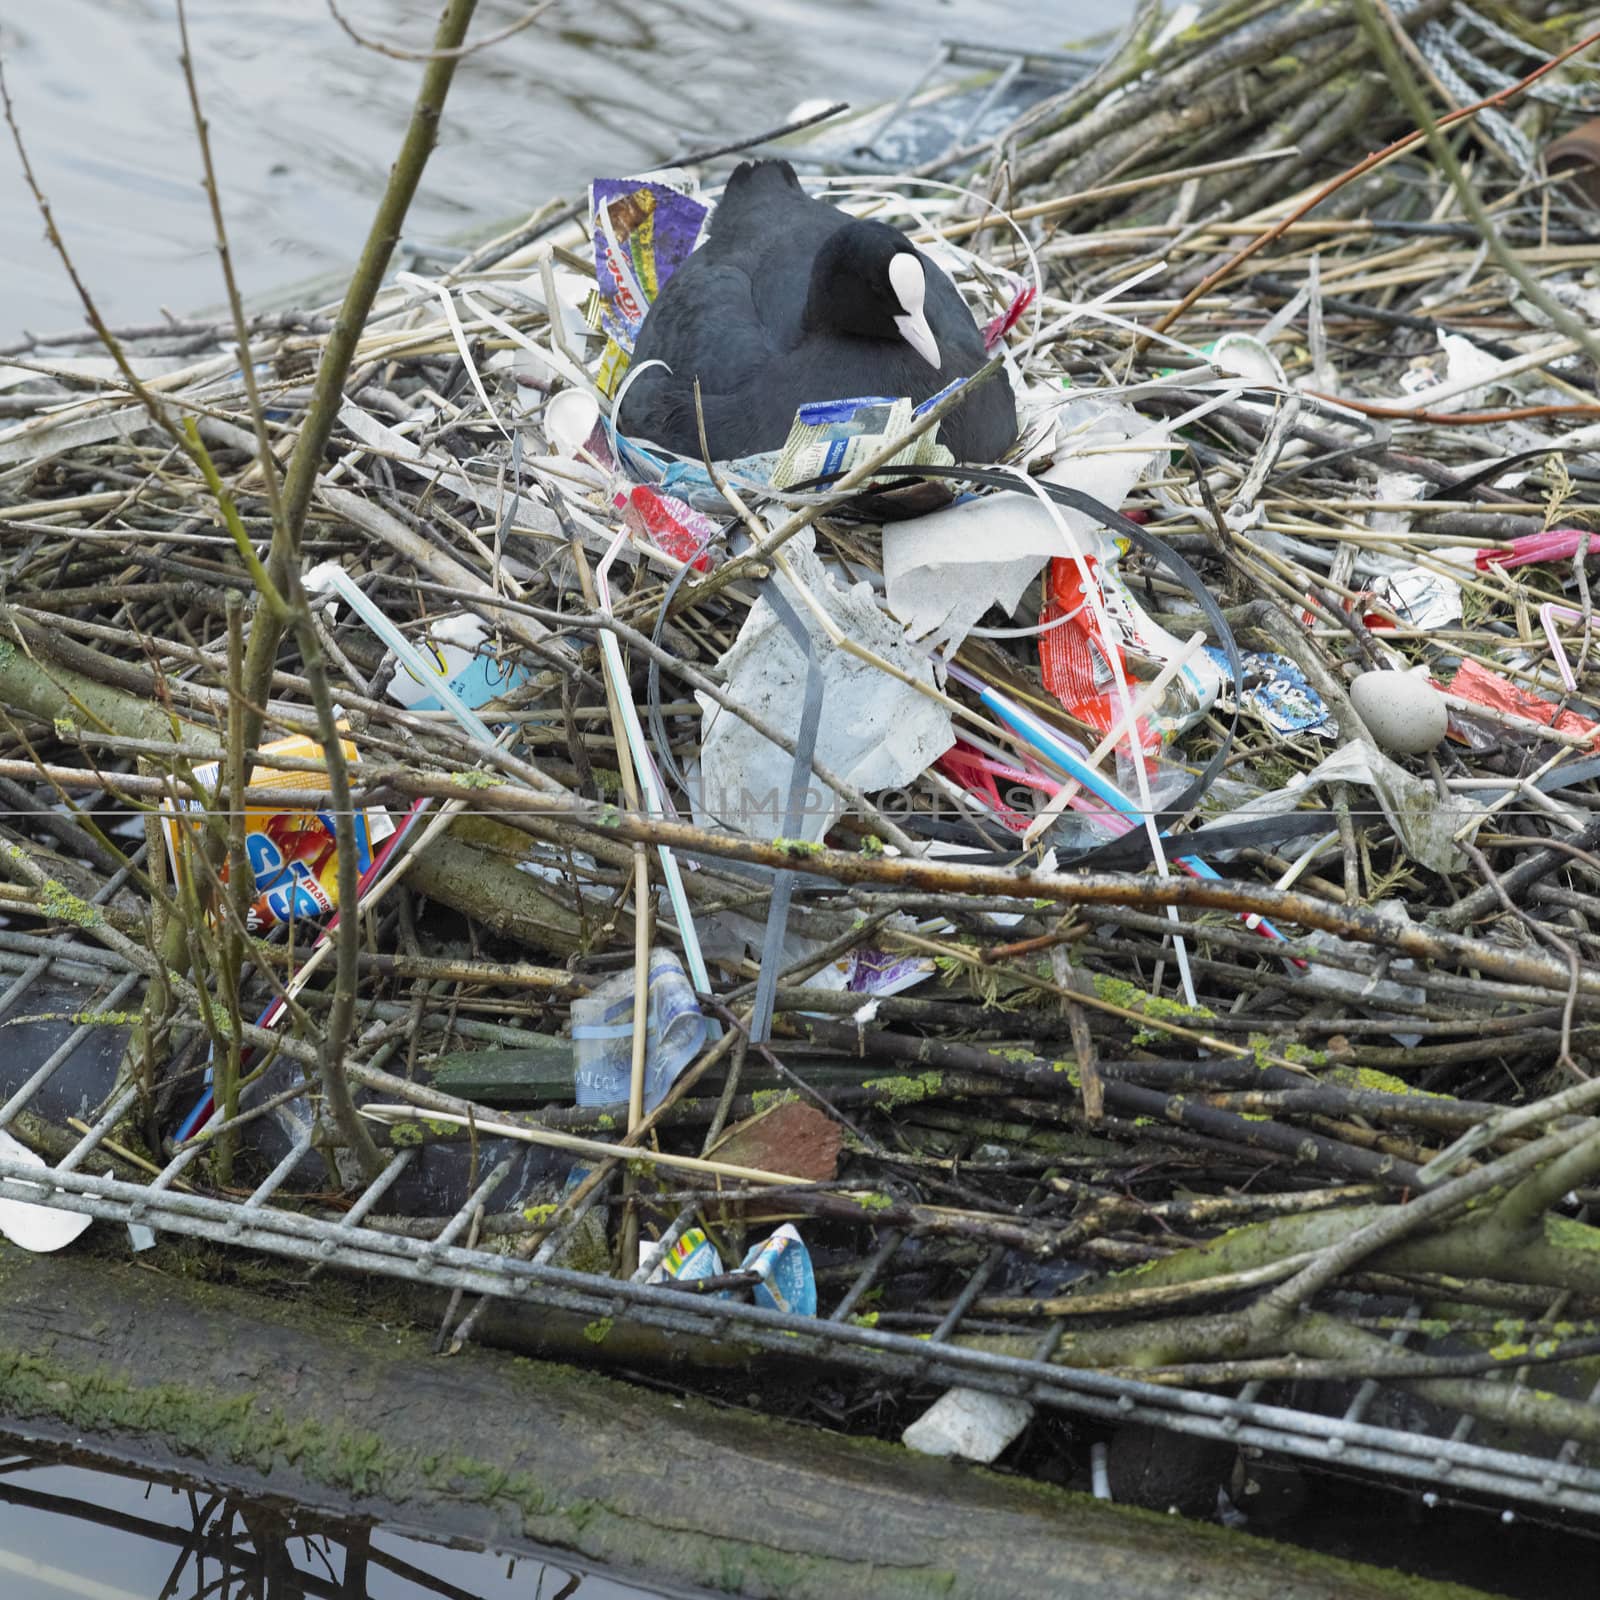 nest with rubbish, Alkmaar, Netherlands